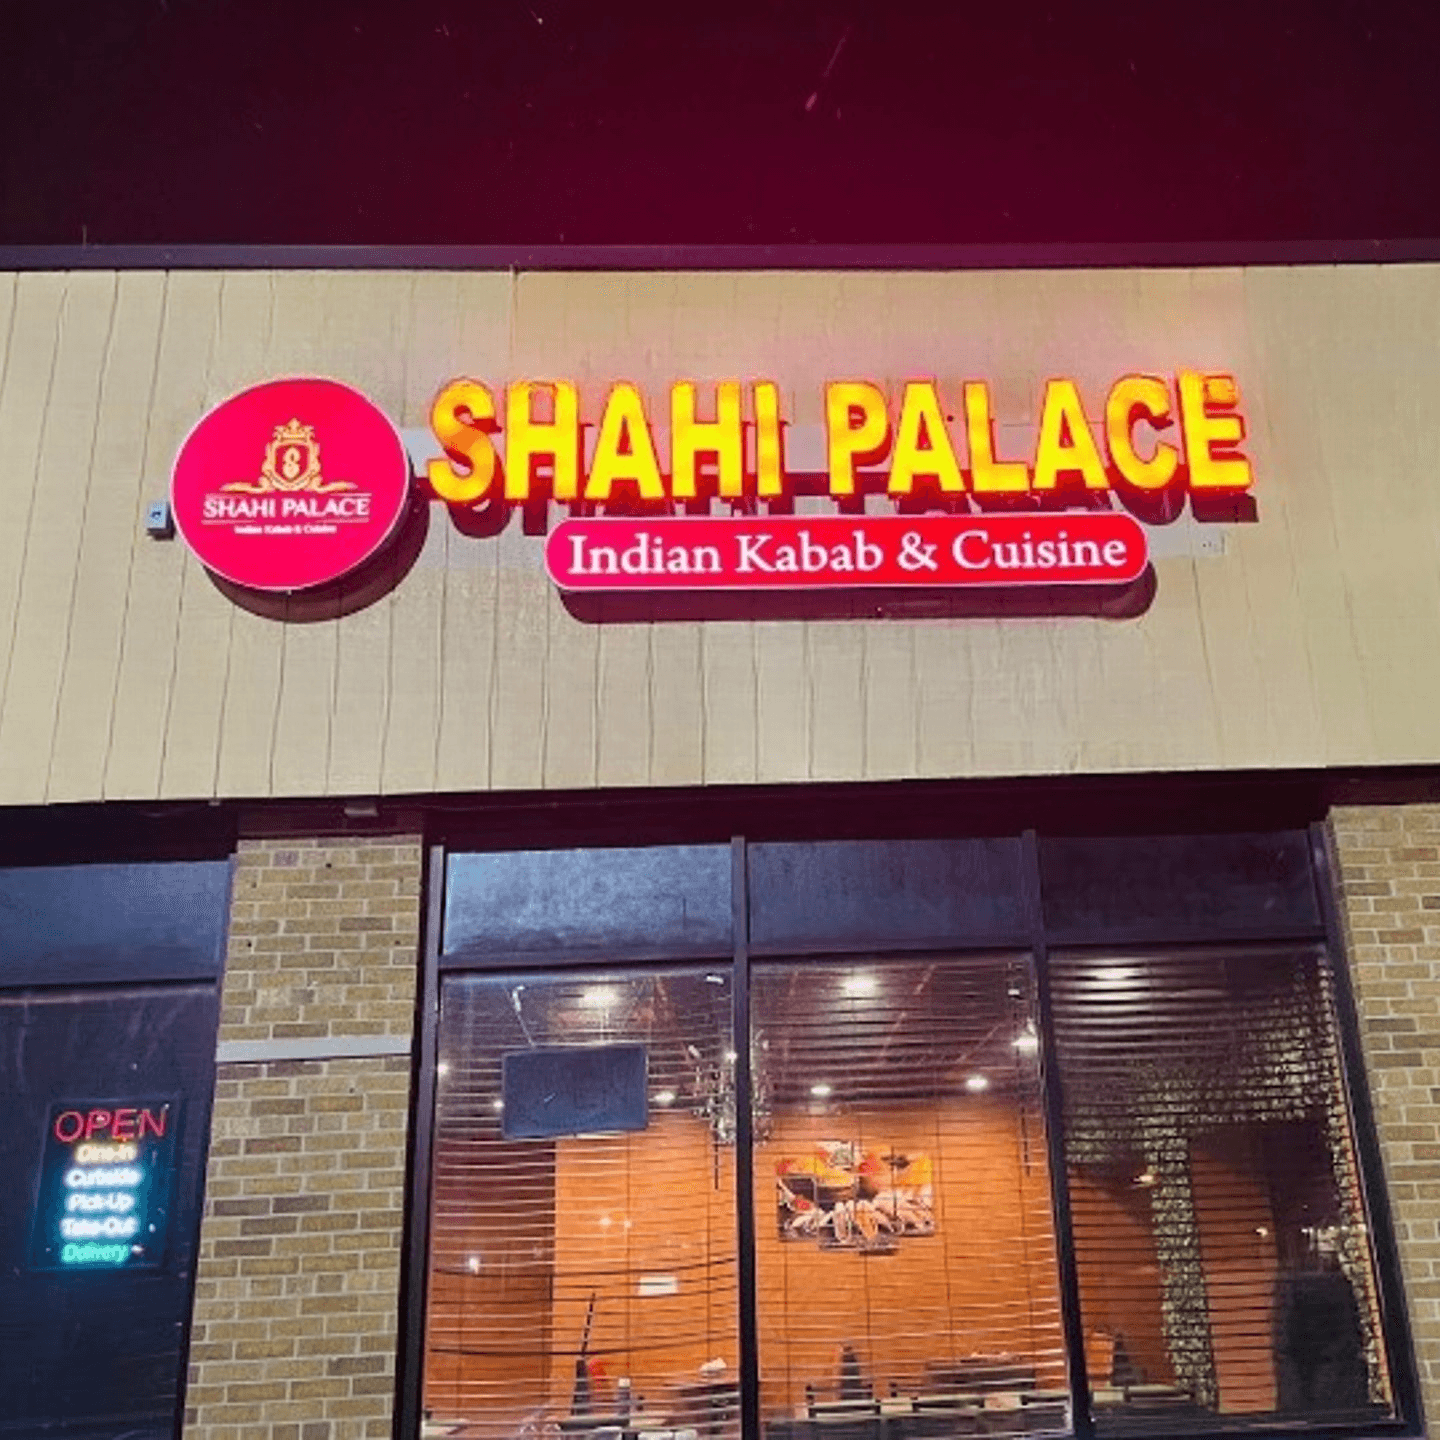 Welcome to Shahi Palace